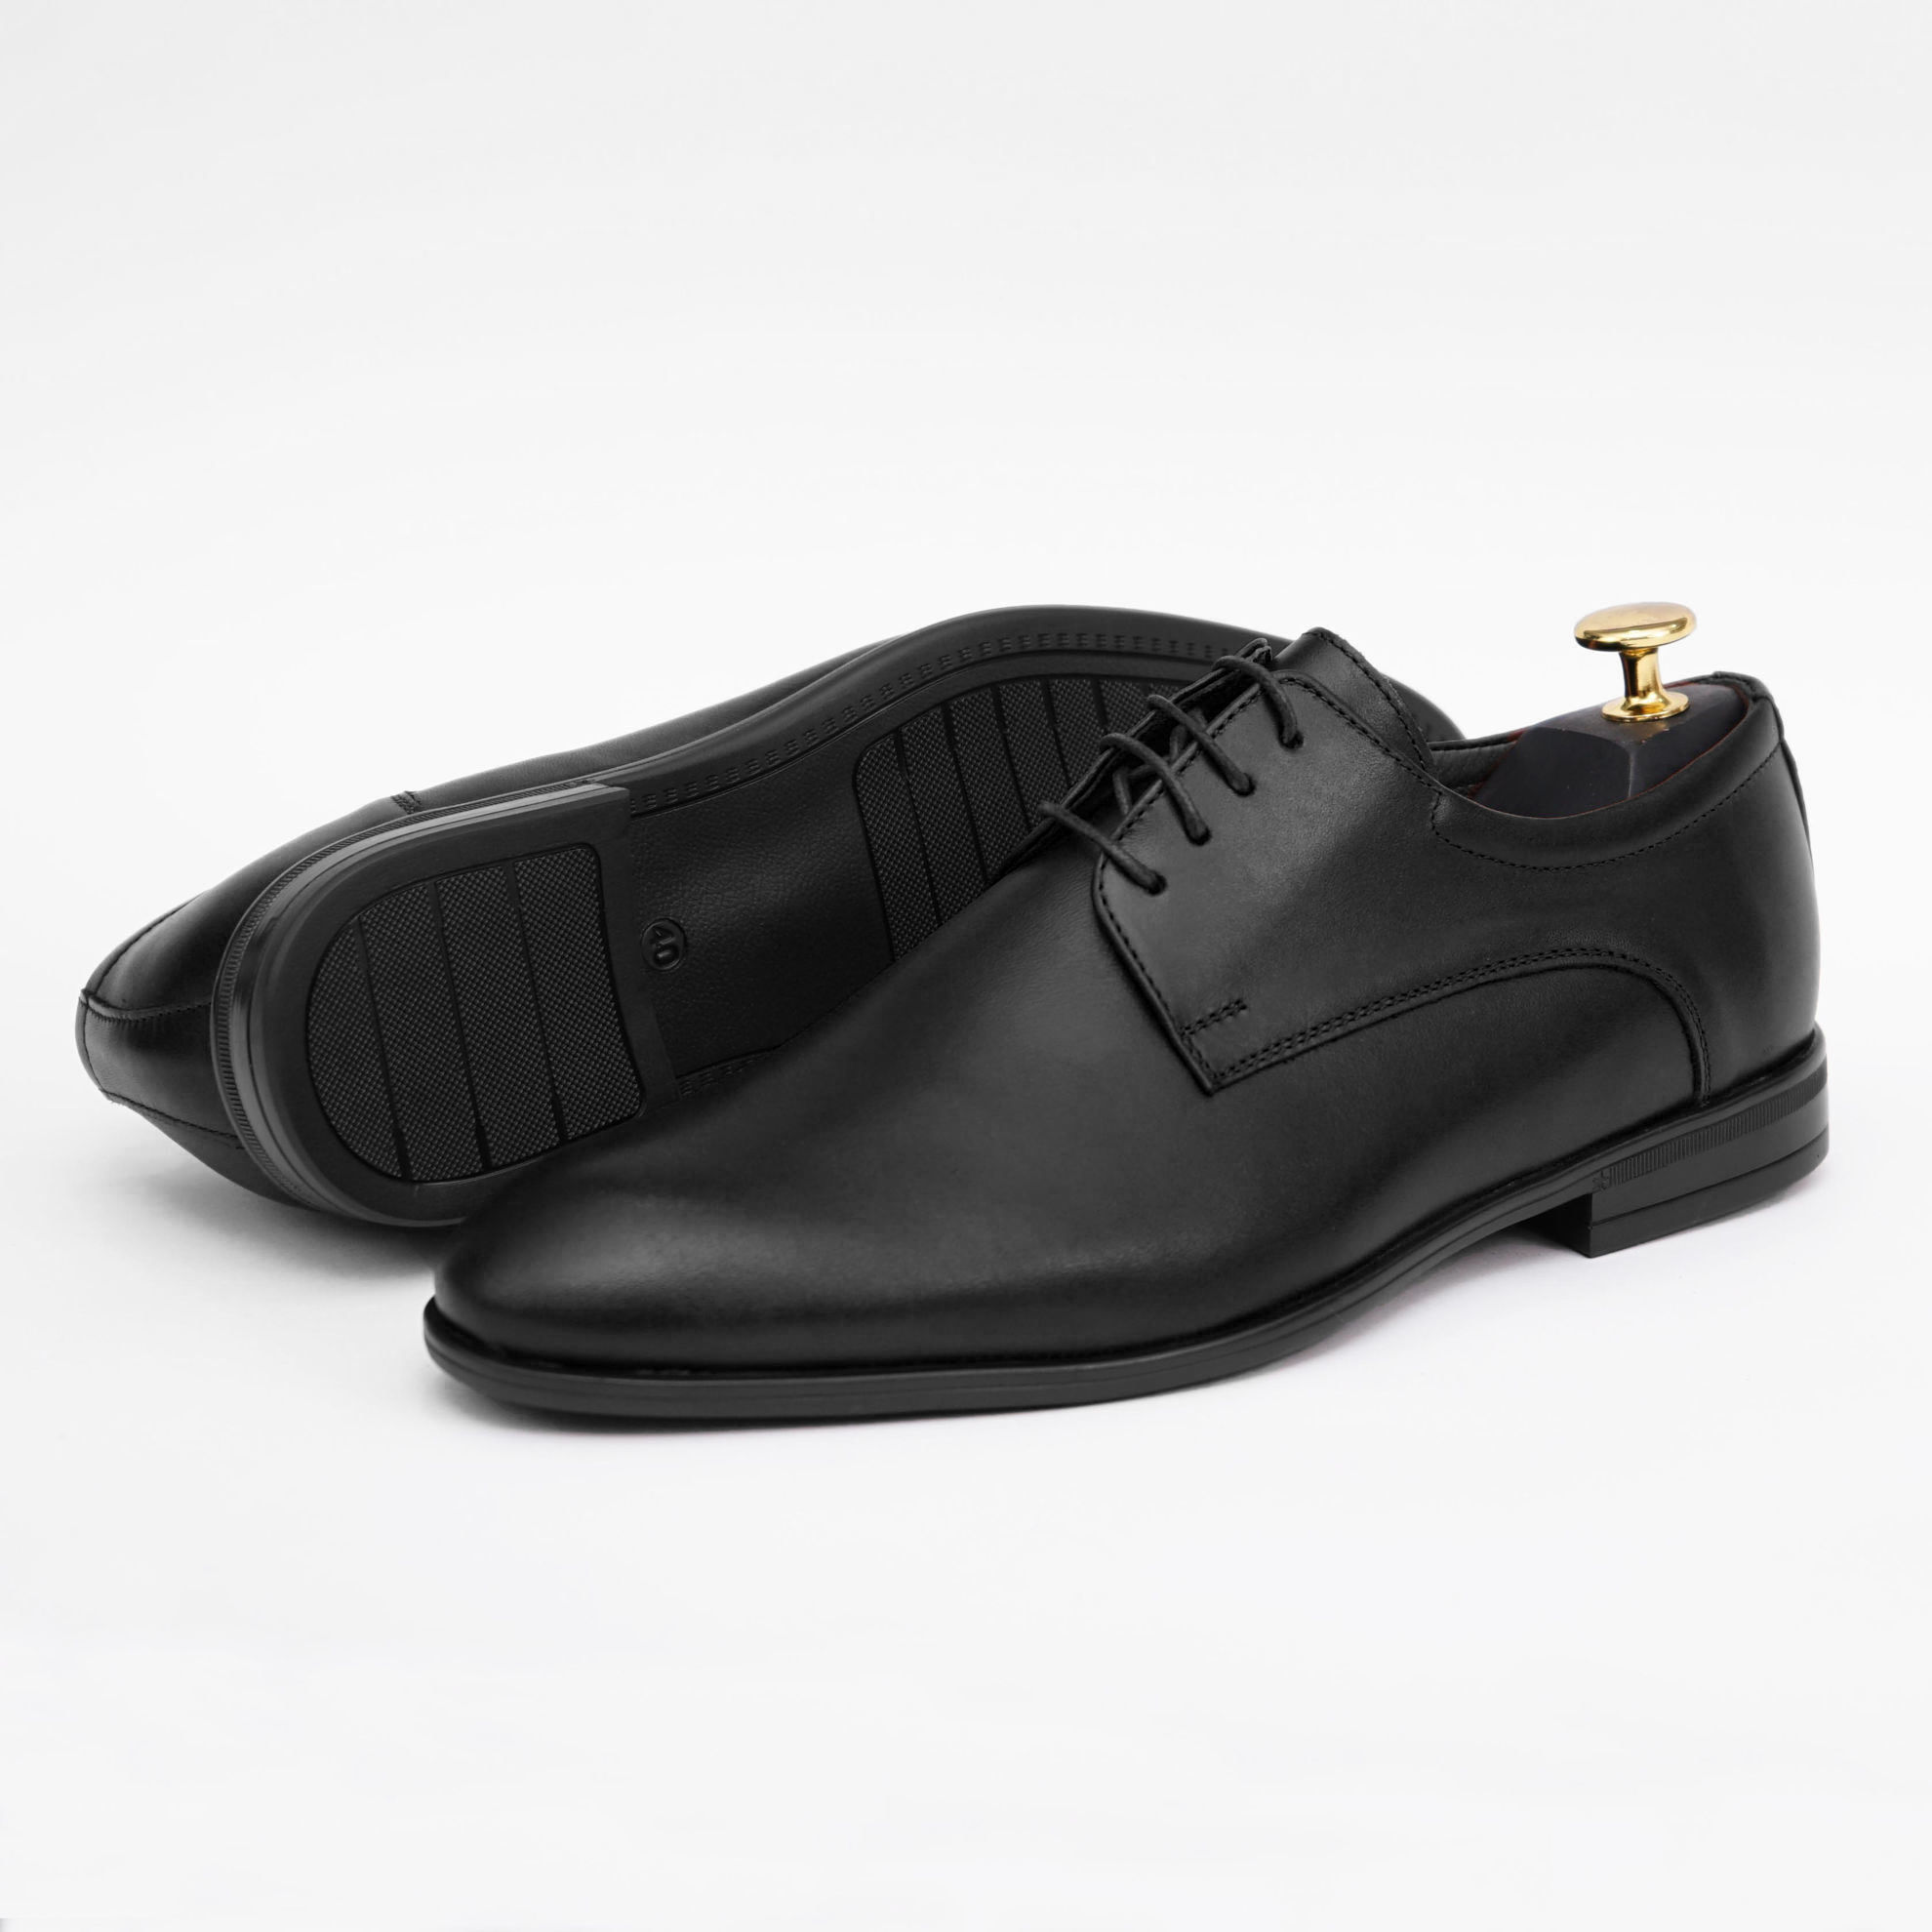 Imagine Pantofi eleganți bărbați din piele naturală 390 NEGRU